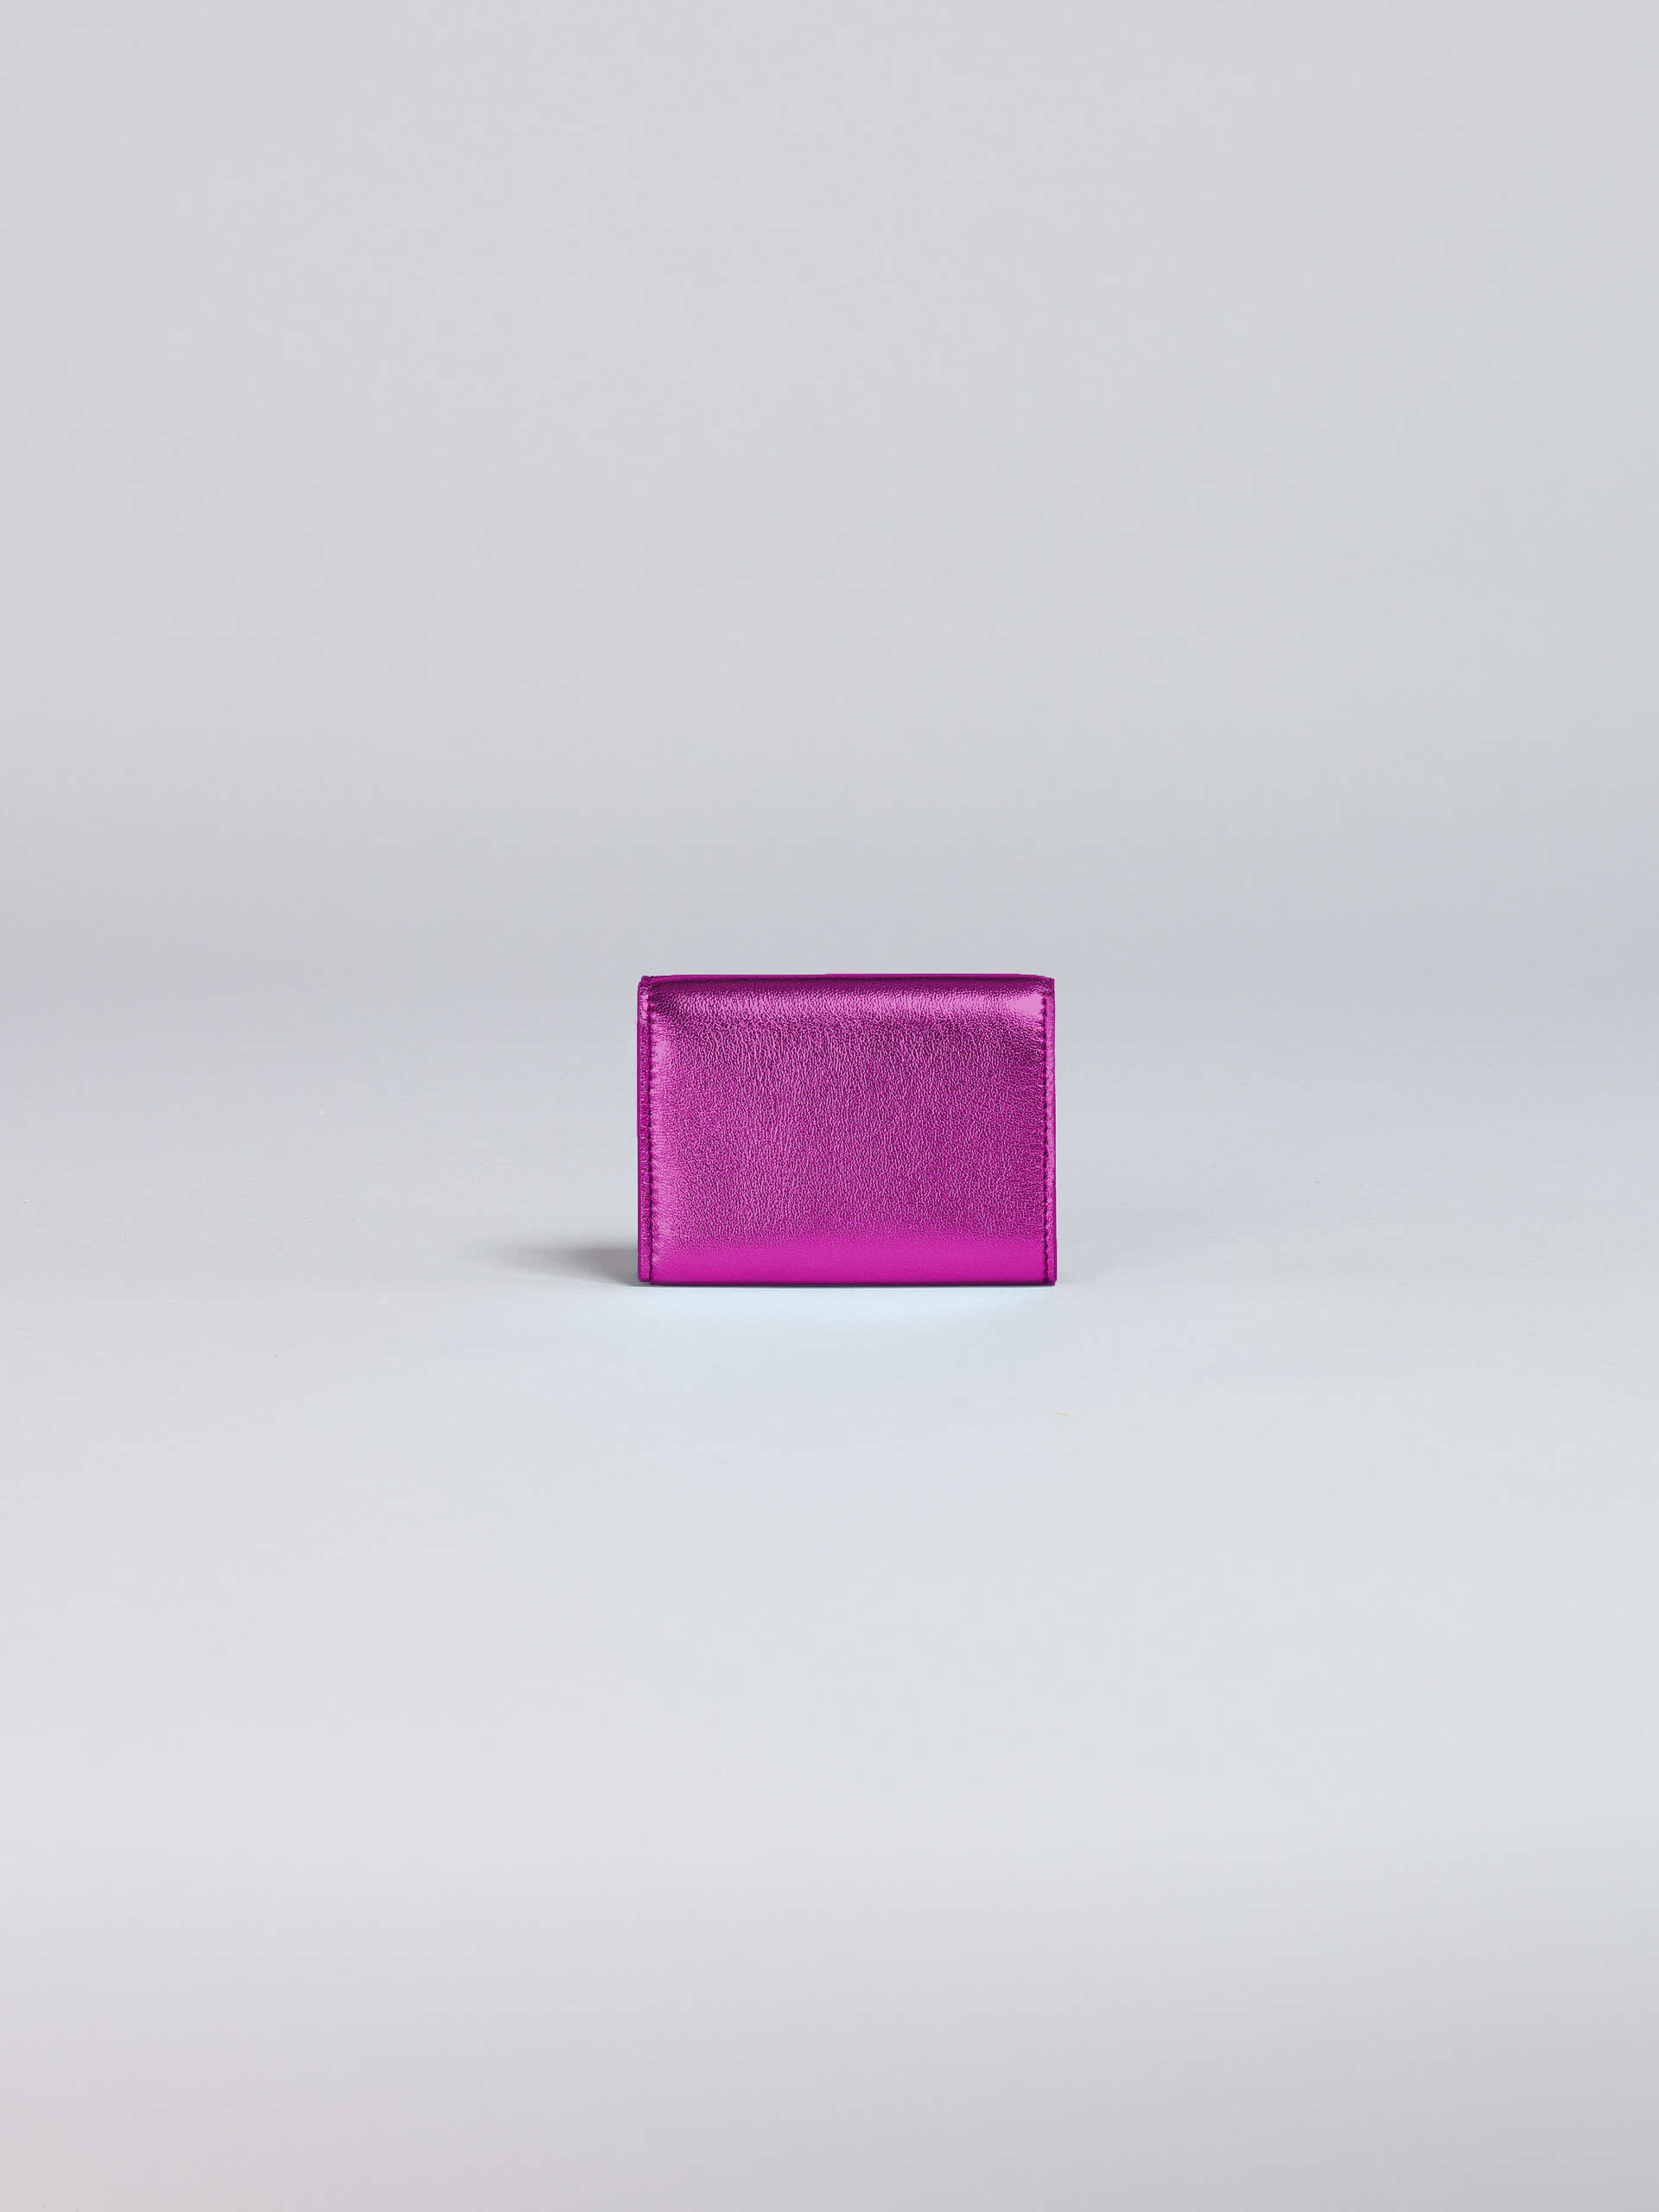 ピンクメタリック調 ナッパレザー三つ折りウォレット - 財布 - Image 3